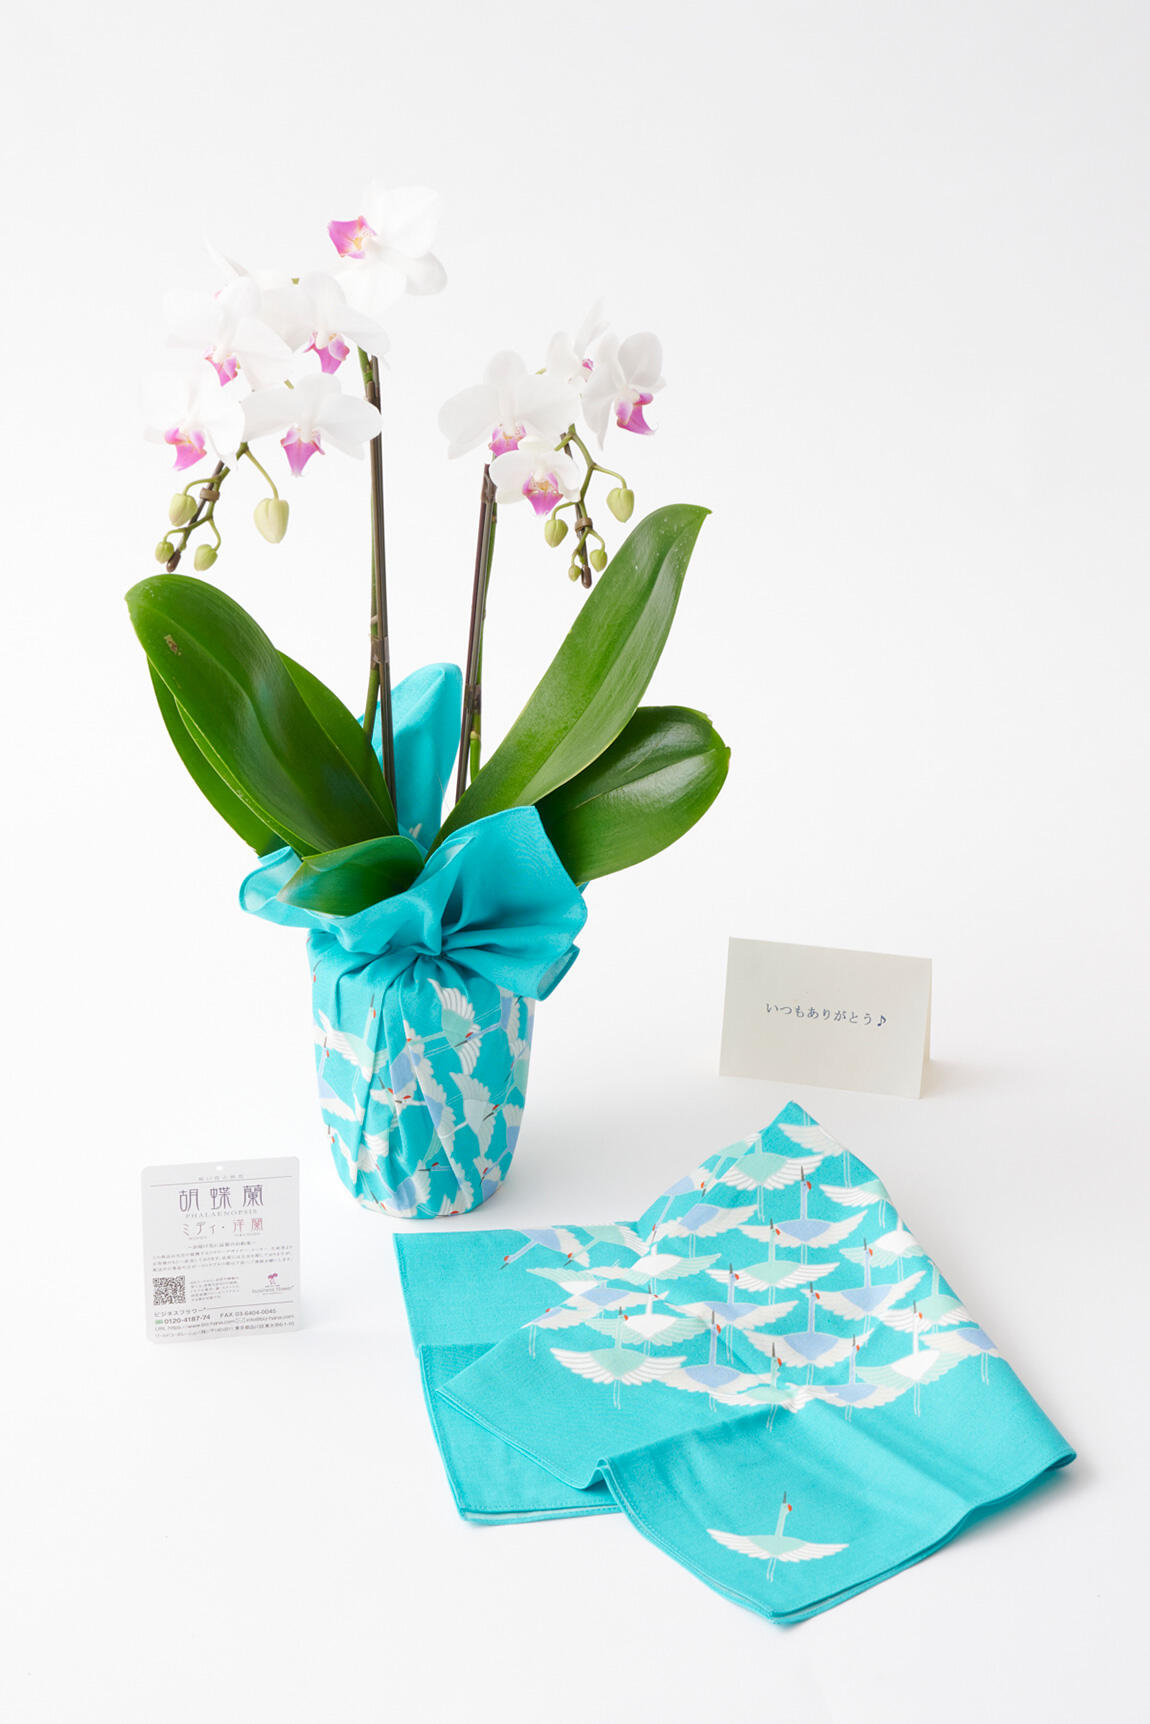 <p>1枚無料でメッセージカードをご用意することができますので、プレゼントやお祝いの贈り花としてもご利用いただけます。</p>